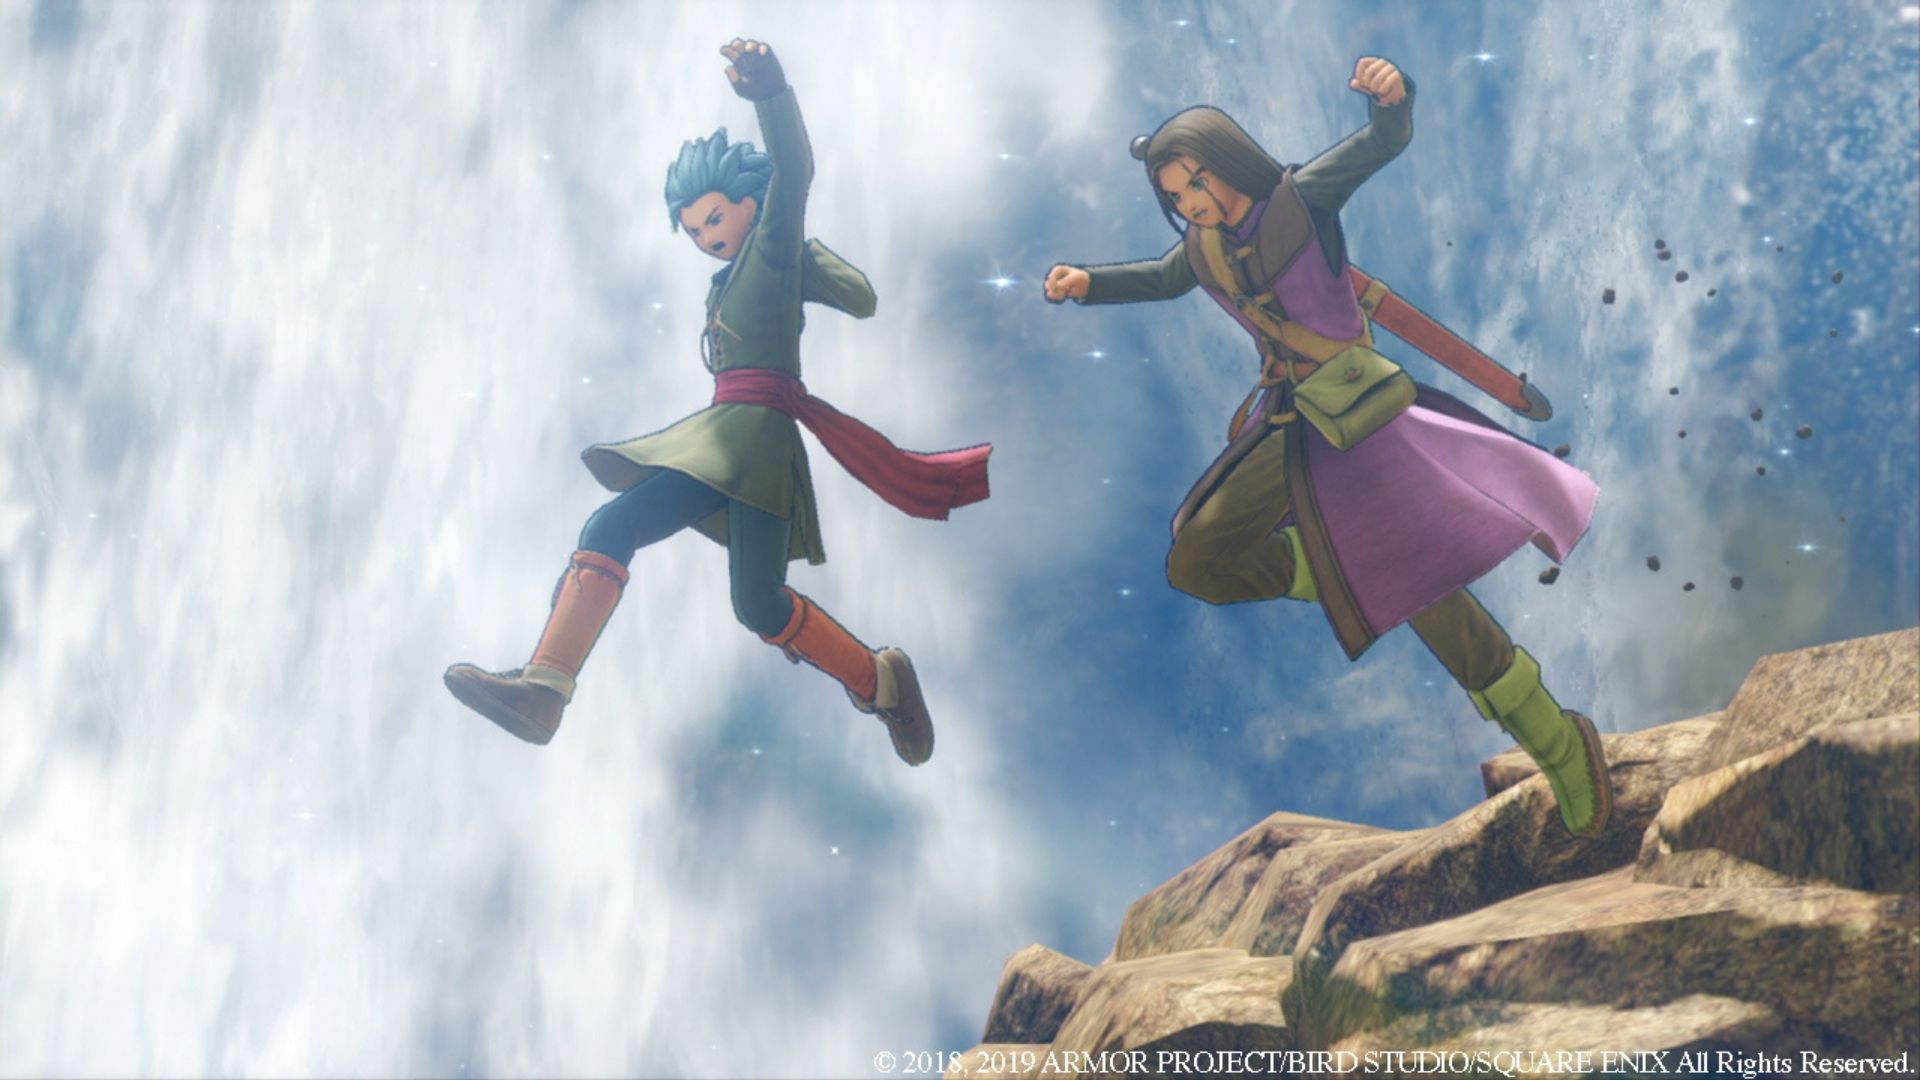 Dois personagens de Dragon Quest XI pulando de um penhasco.